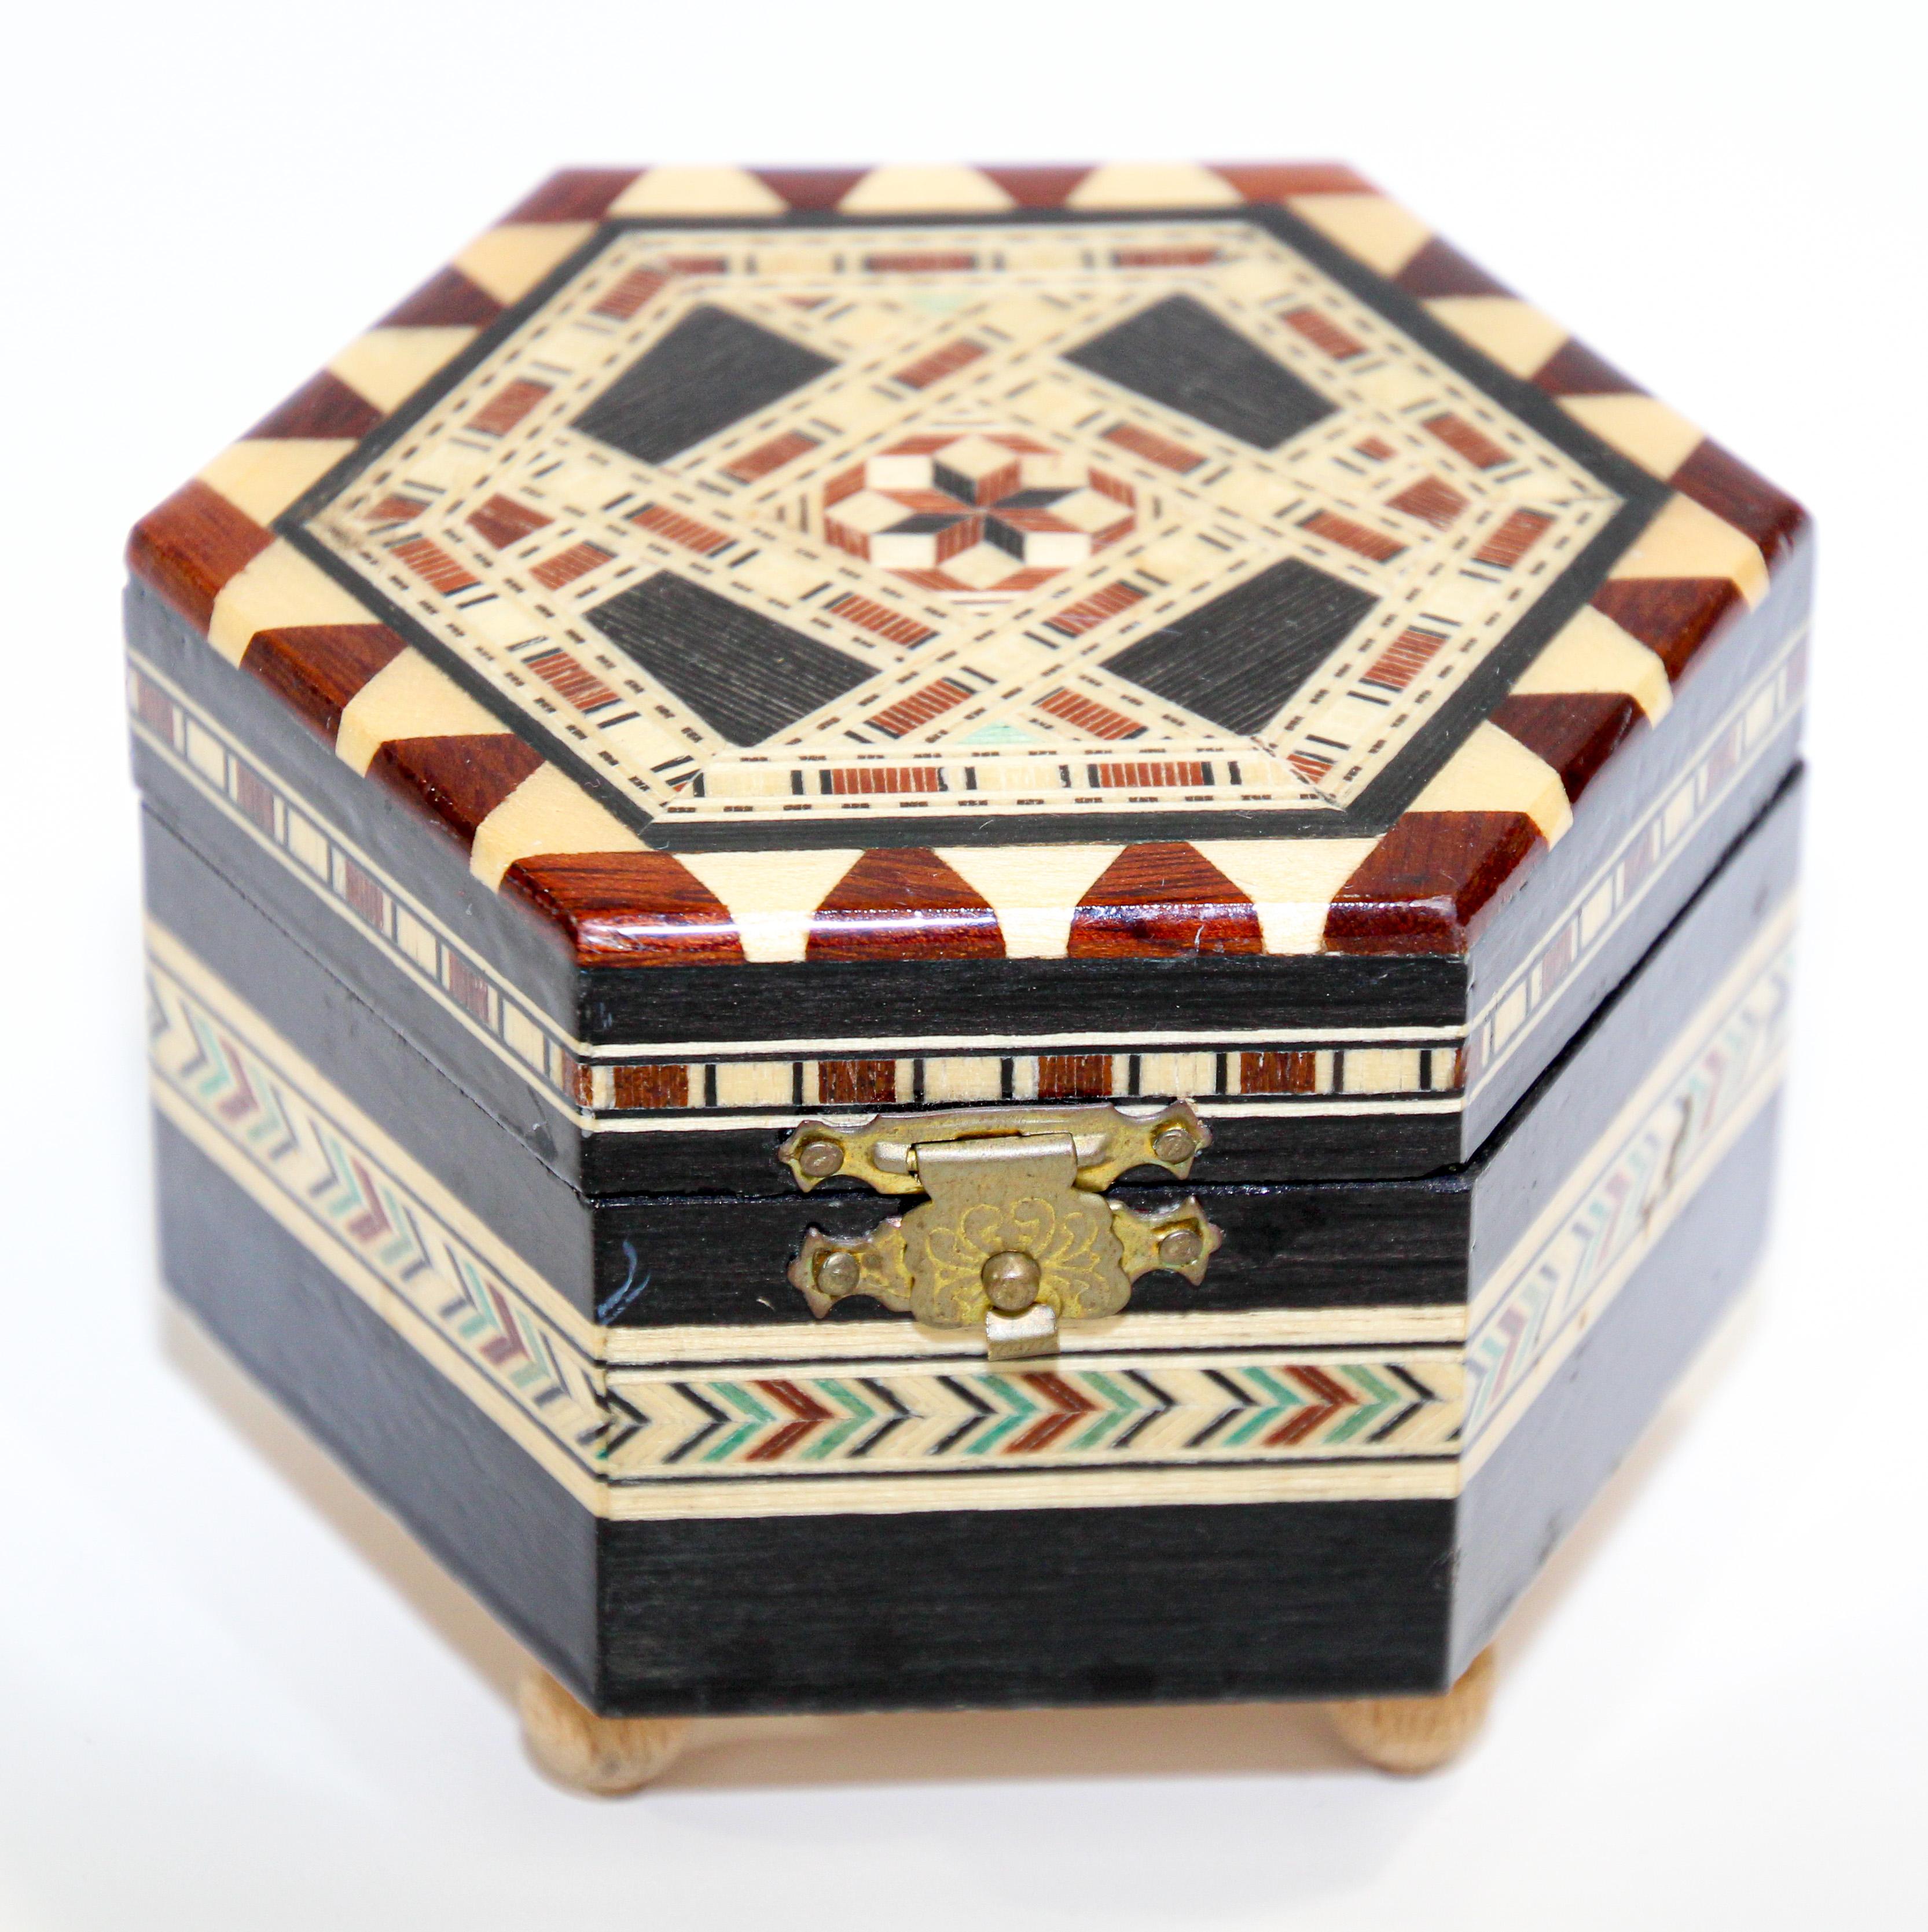 Exquise boîte à musique sur pied en bois de noyer avec marqueterie de mosaïque, fabriquée à la main dans le style du Moyen-Orient.
Fabriqué à la main en Espagne dans le style syrien mauresque avec une doublure en velours rouge et un miroir.
Boîte à